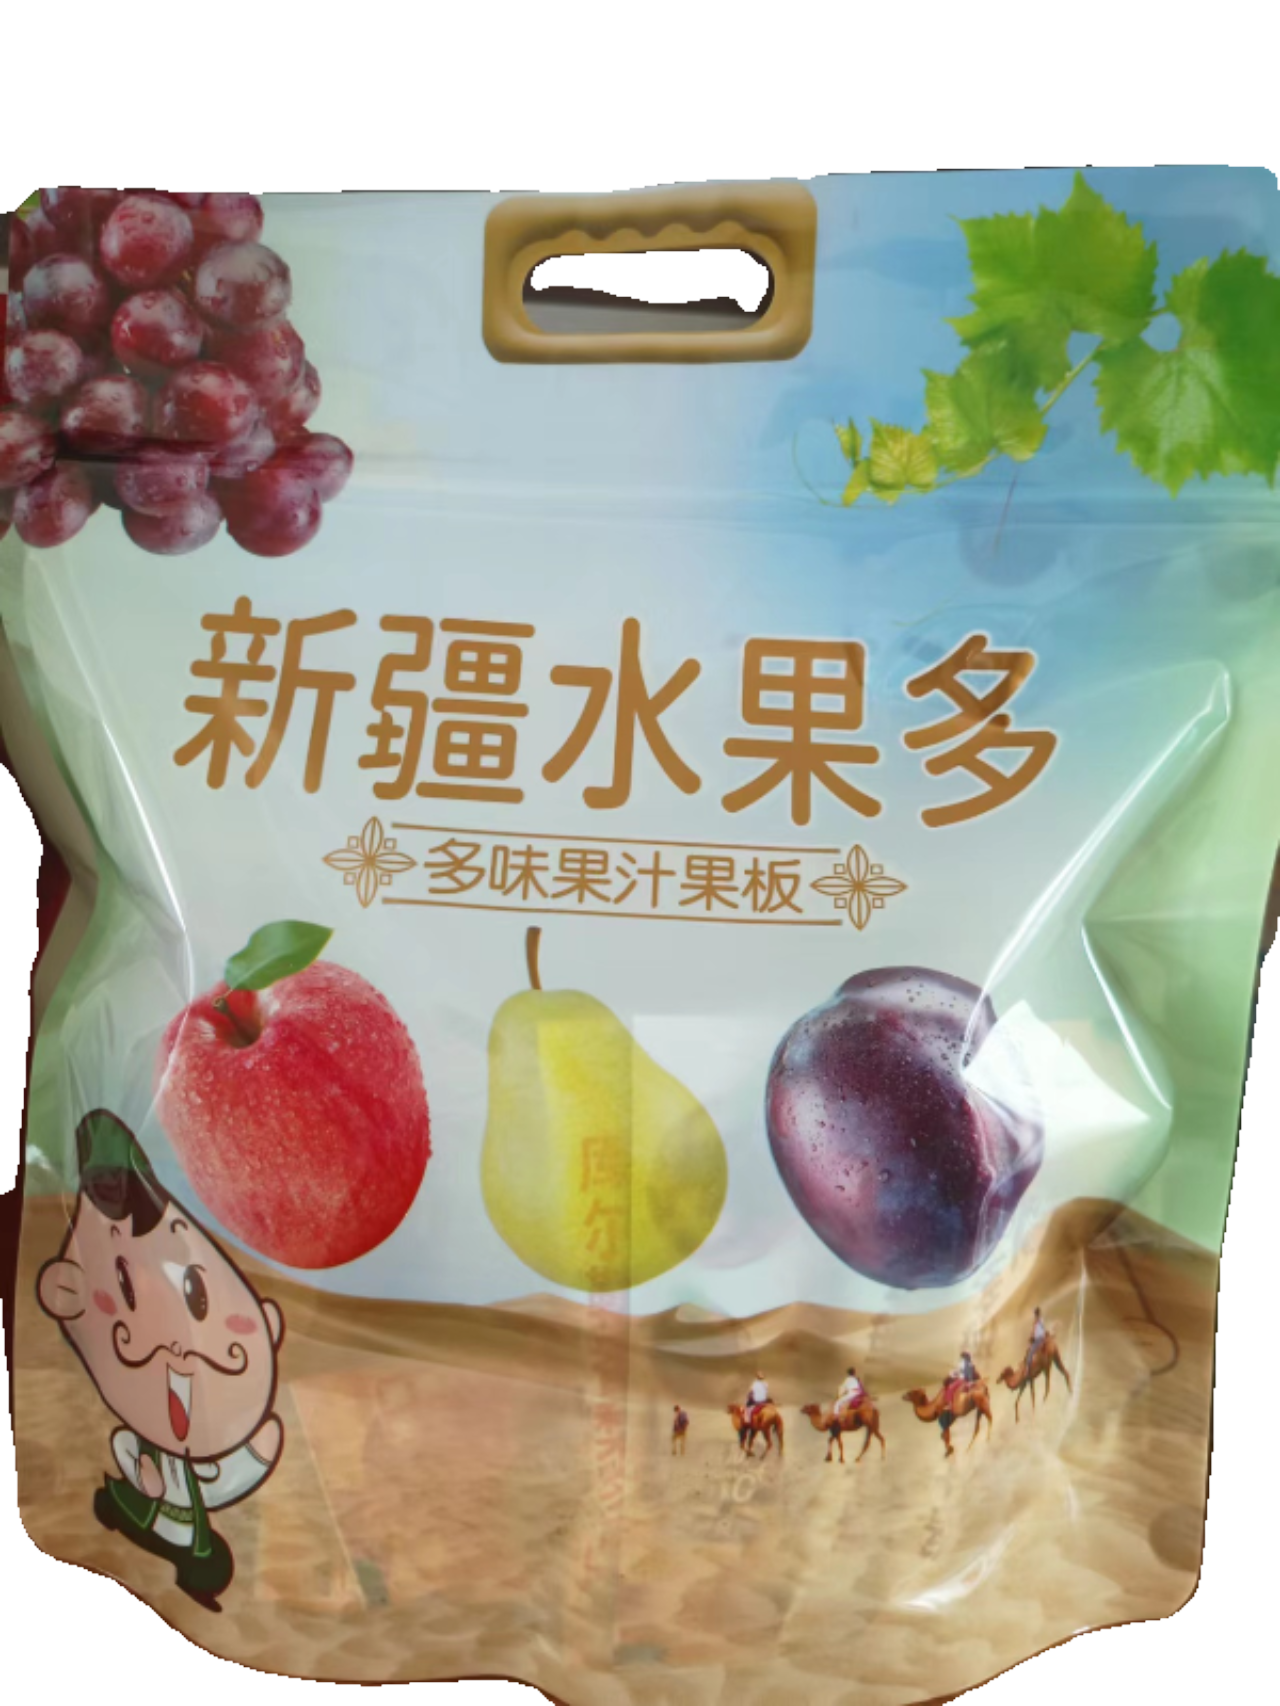 新疆水果多香梨葡萄苹果西梅果汁果冻板独立包装休闲零食